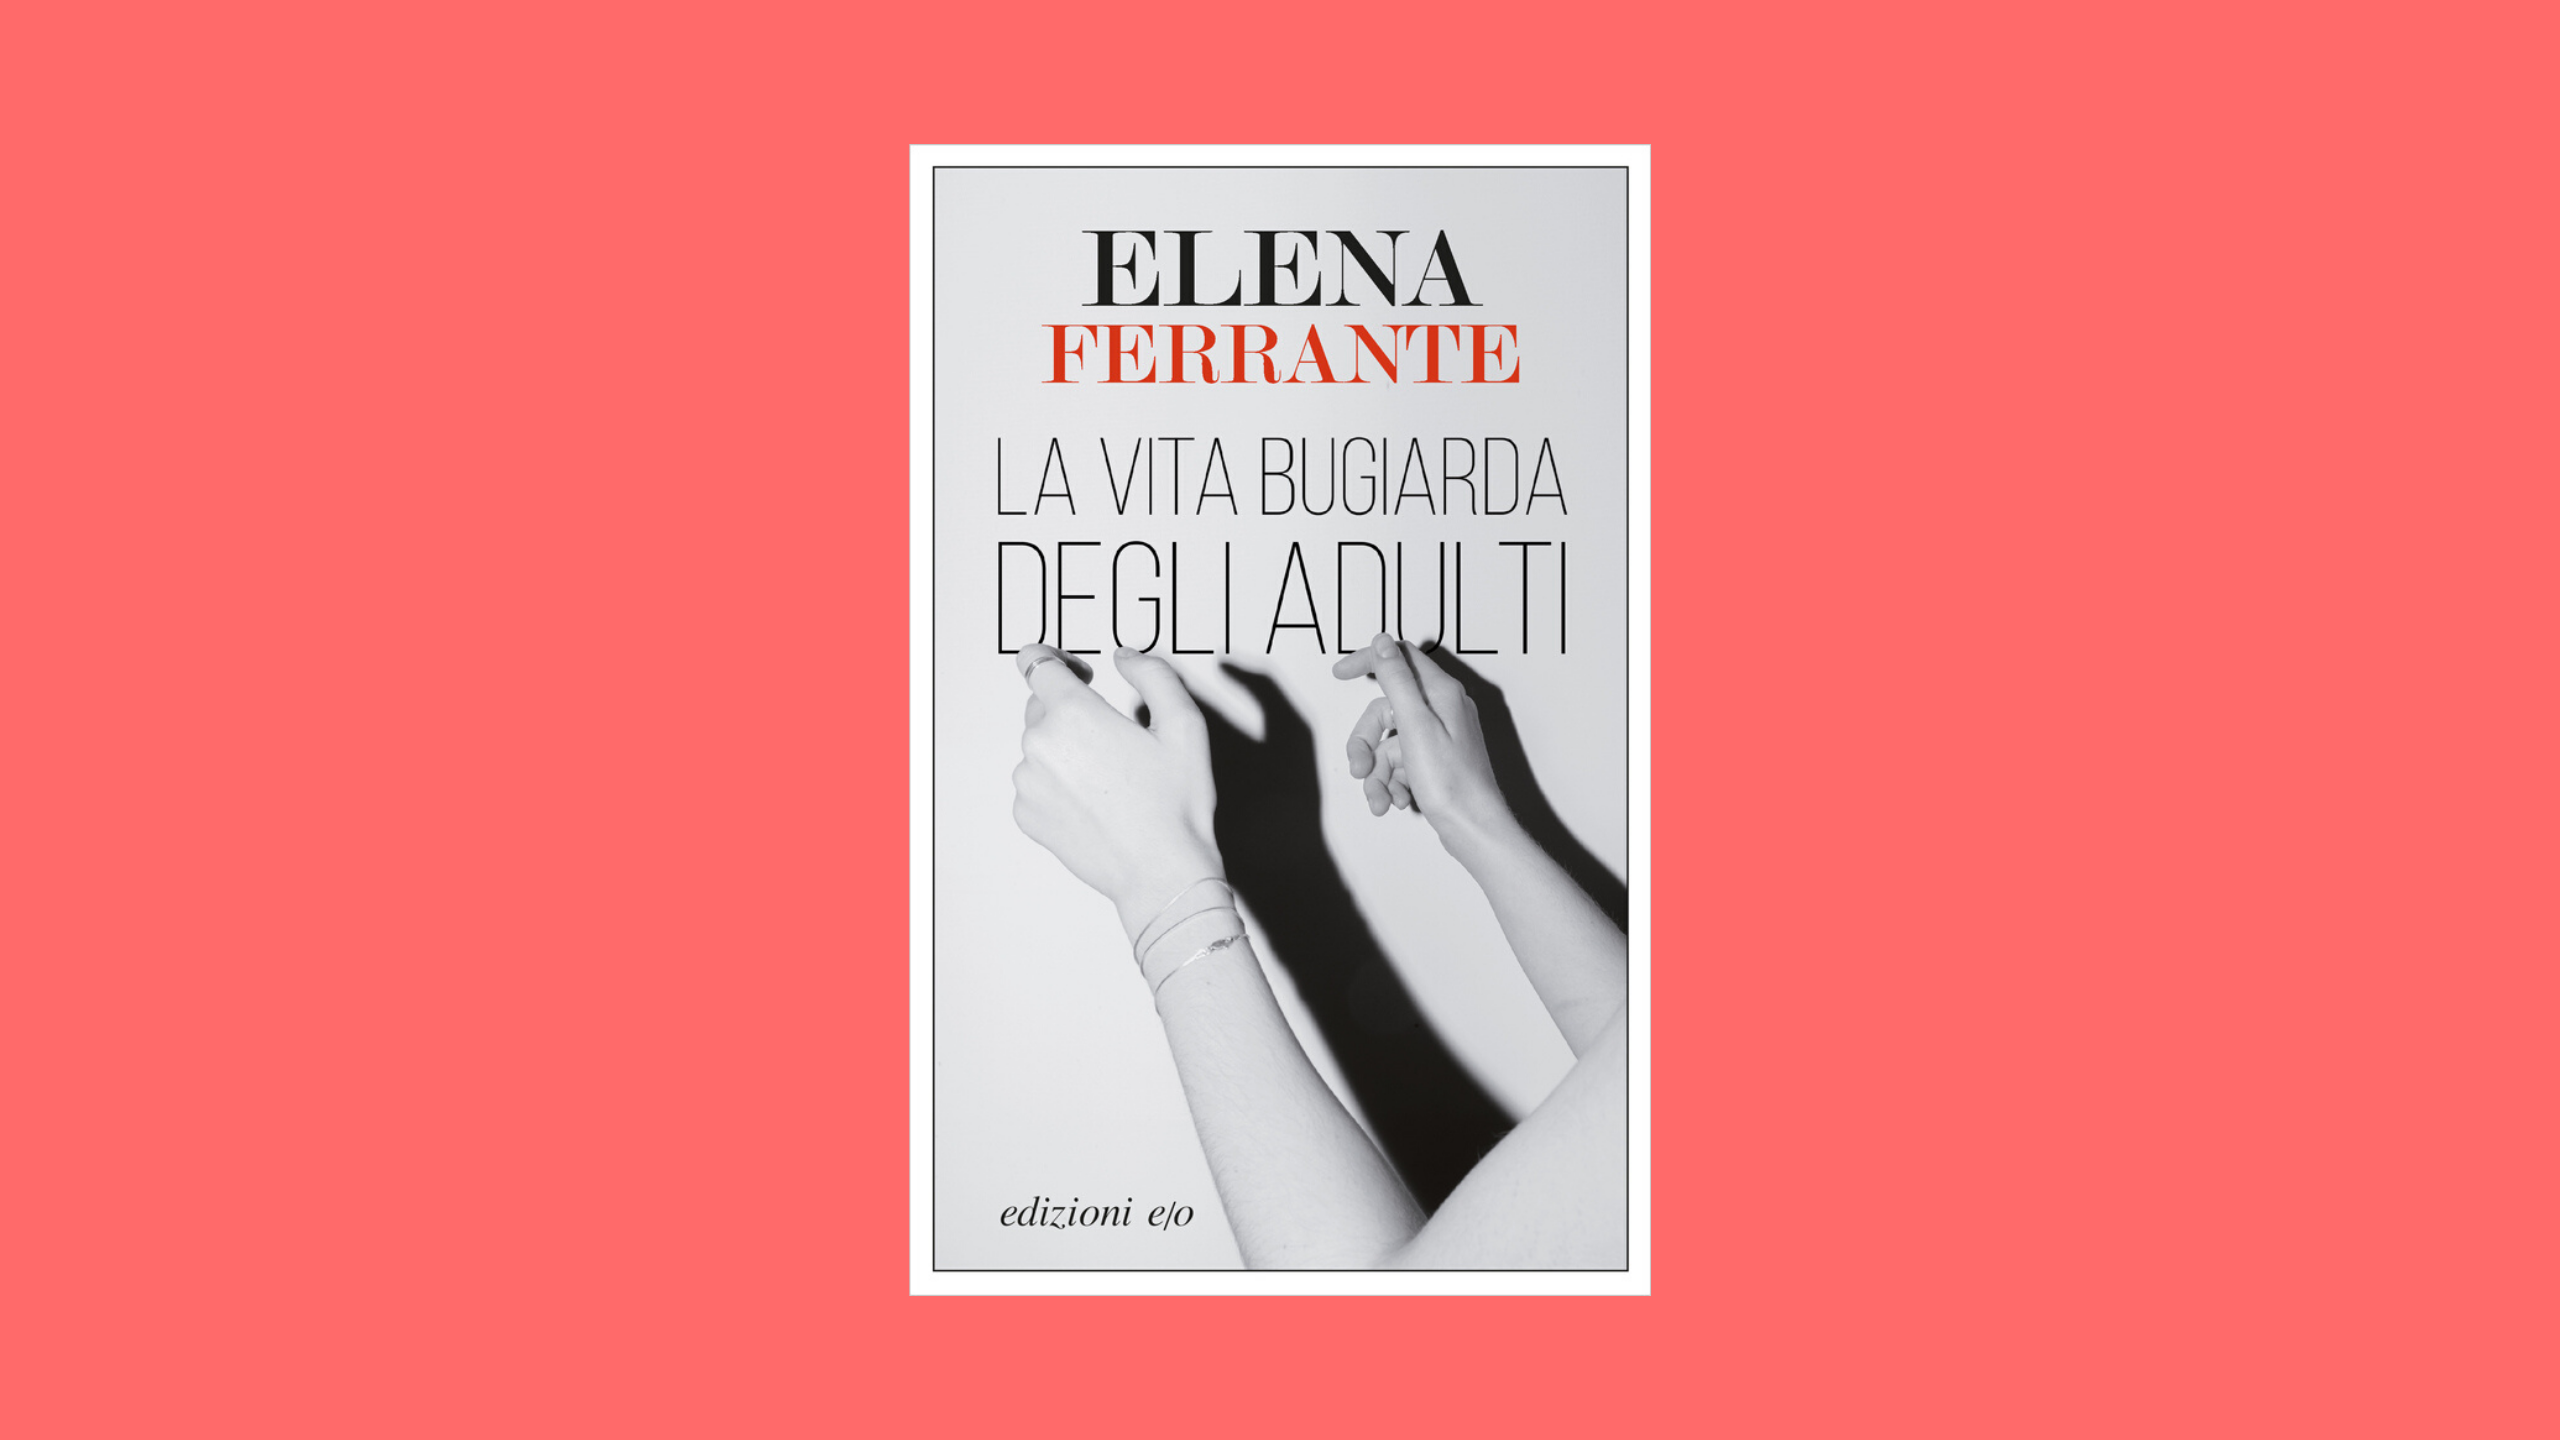 Novo livro de Elena Ferrante vai ser adaptado para série pela Netflix